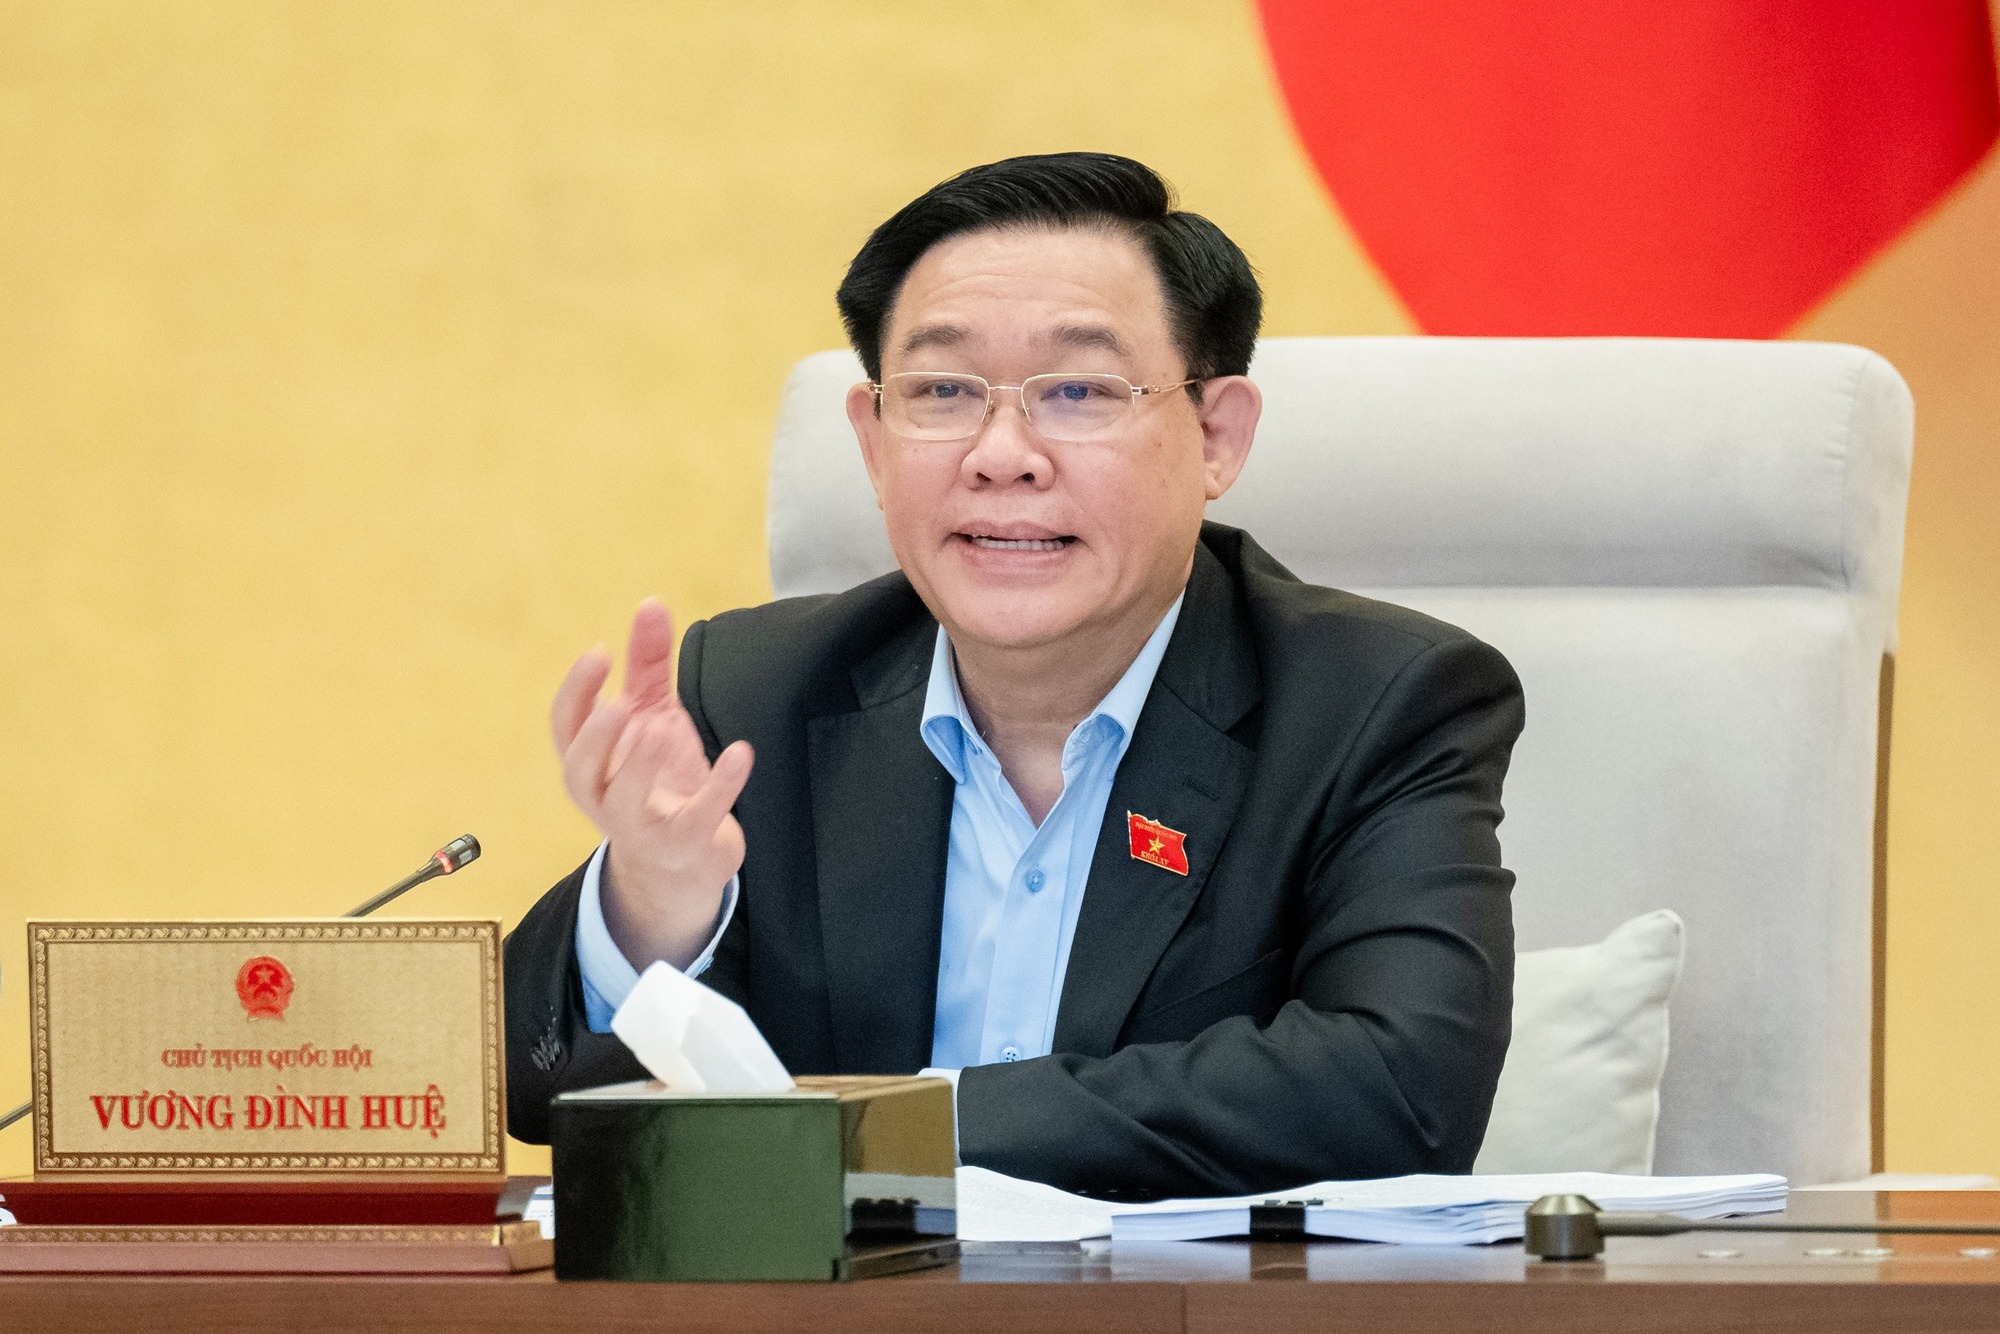 Chủ tịch Quốc hội Vương Đình Huệ cho rằng hiện vấn đề cốt yếu của Hà Nội là ô nhiễm môi trường